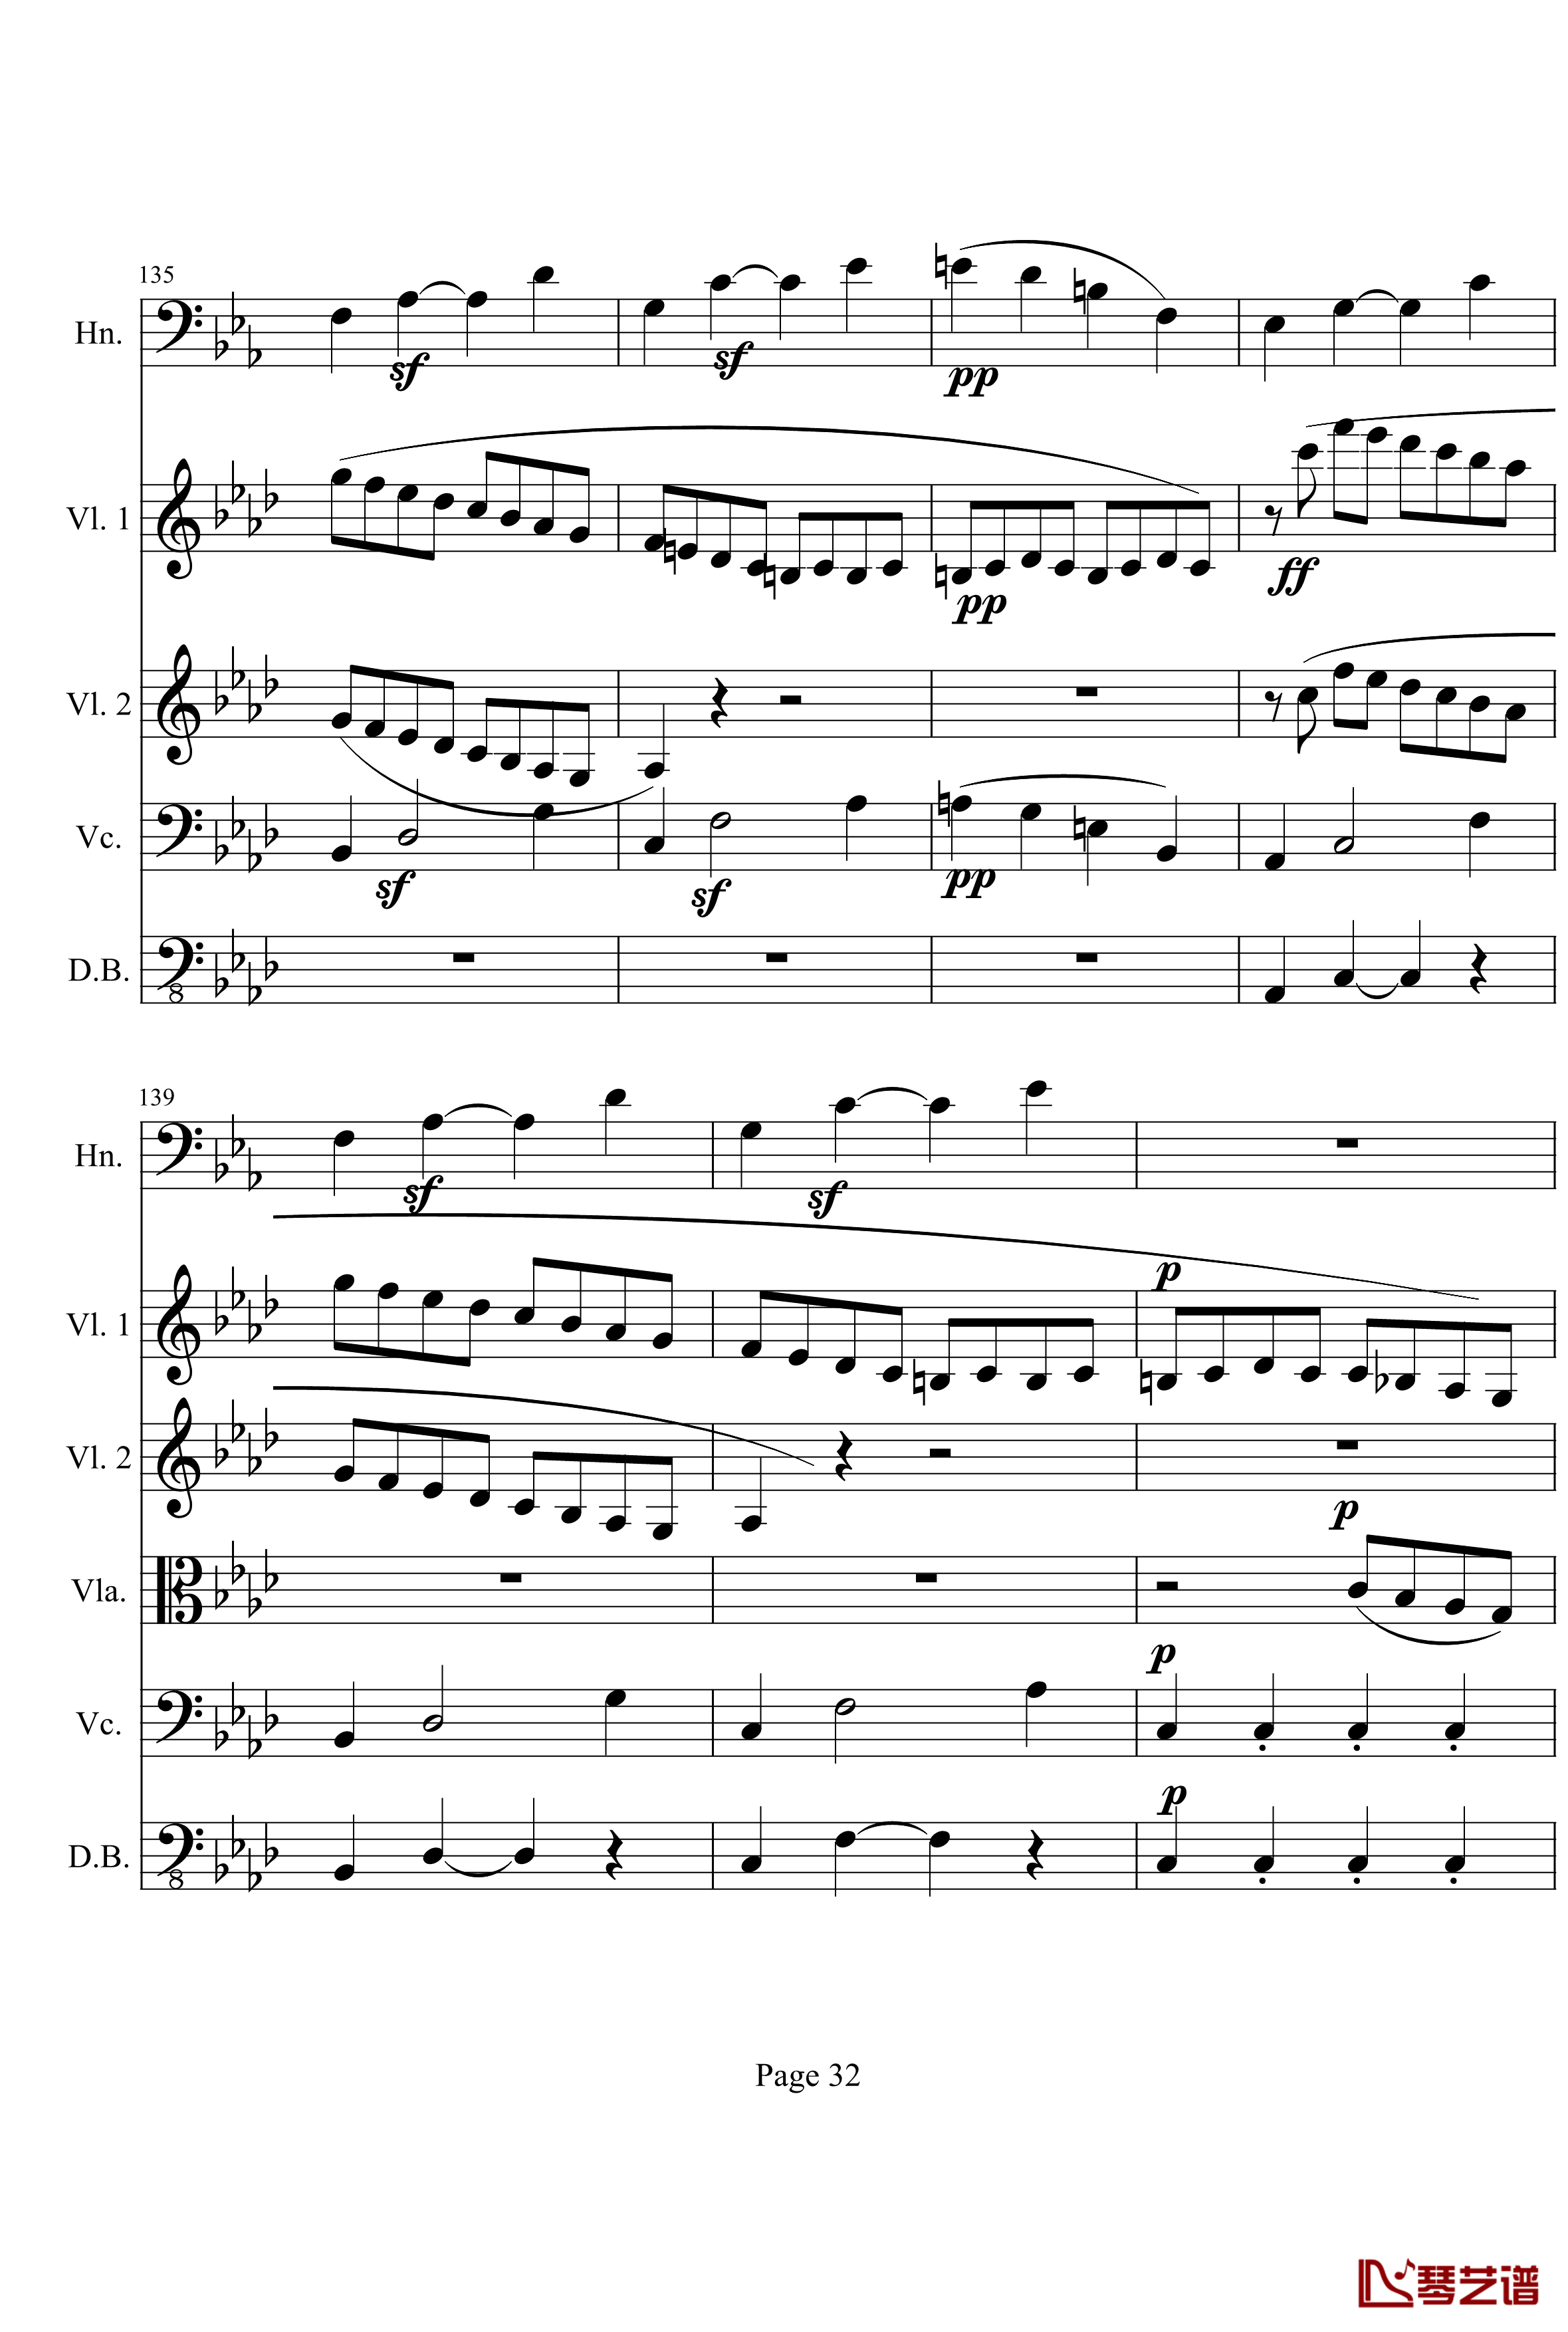 奏鸣曲之交响钢琴谱-第1首-Ⅰ-贝多芬-beethoven32